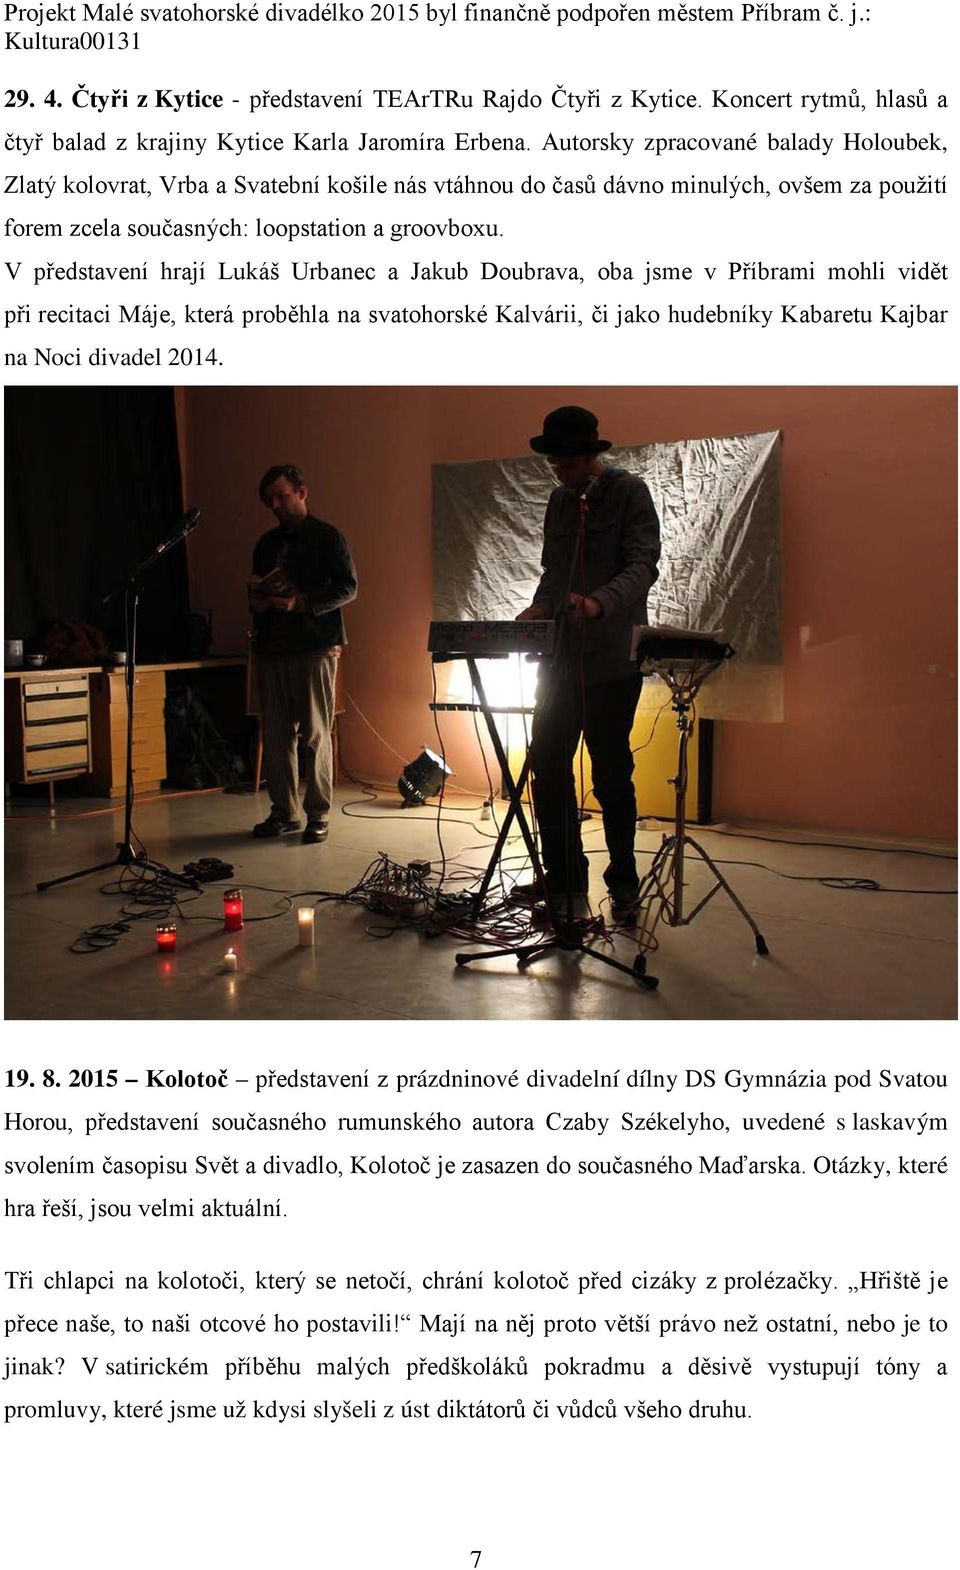 V představení hrají Lukáš Urbanec a Jakub Doubrava, oba jsme v Příbrami mohli vidět při recitaci Máje, která proběhla na svatohorské Kalvárii, či jako hudebníky Kabaretu Kajbar na Noci divadel 2014.